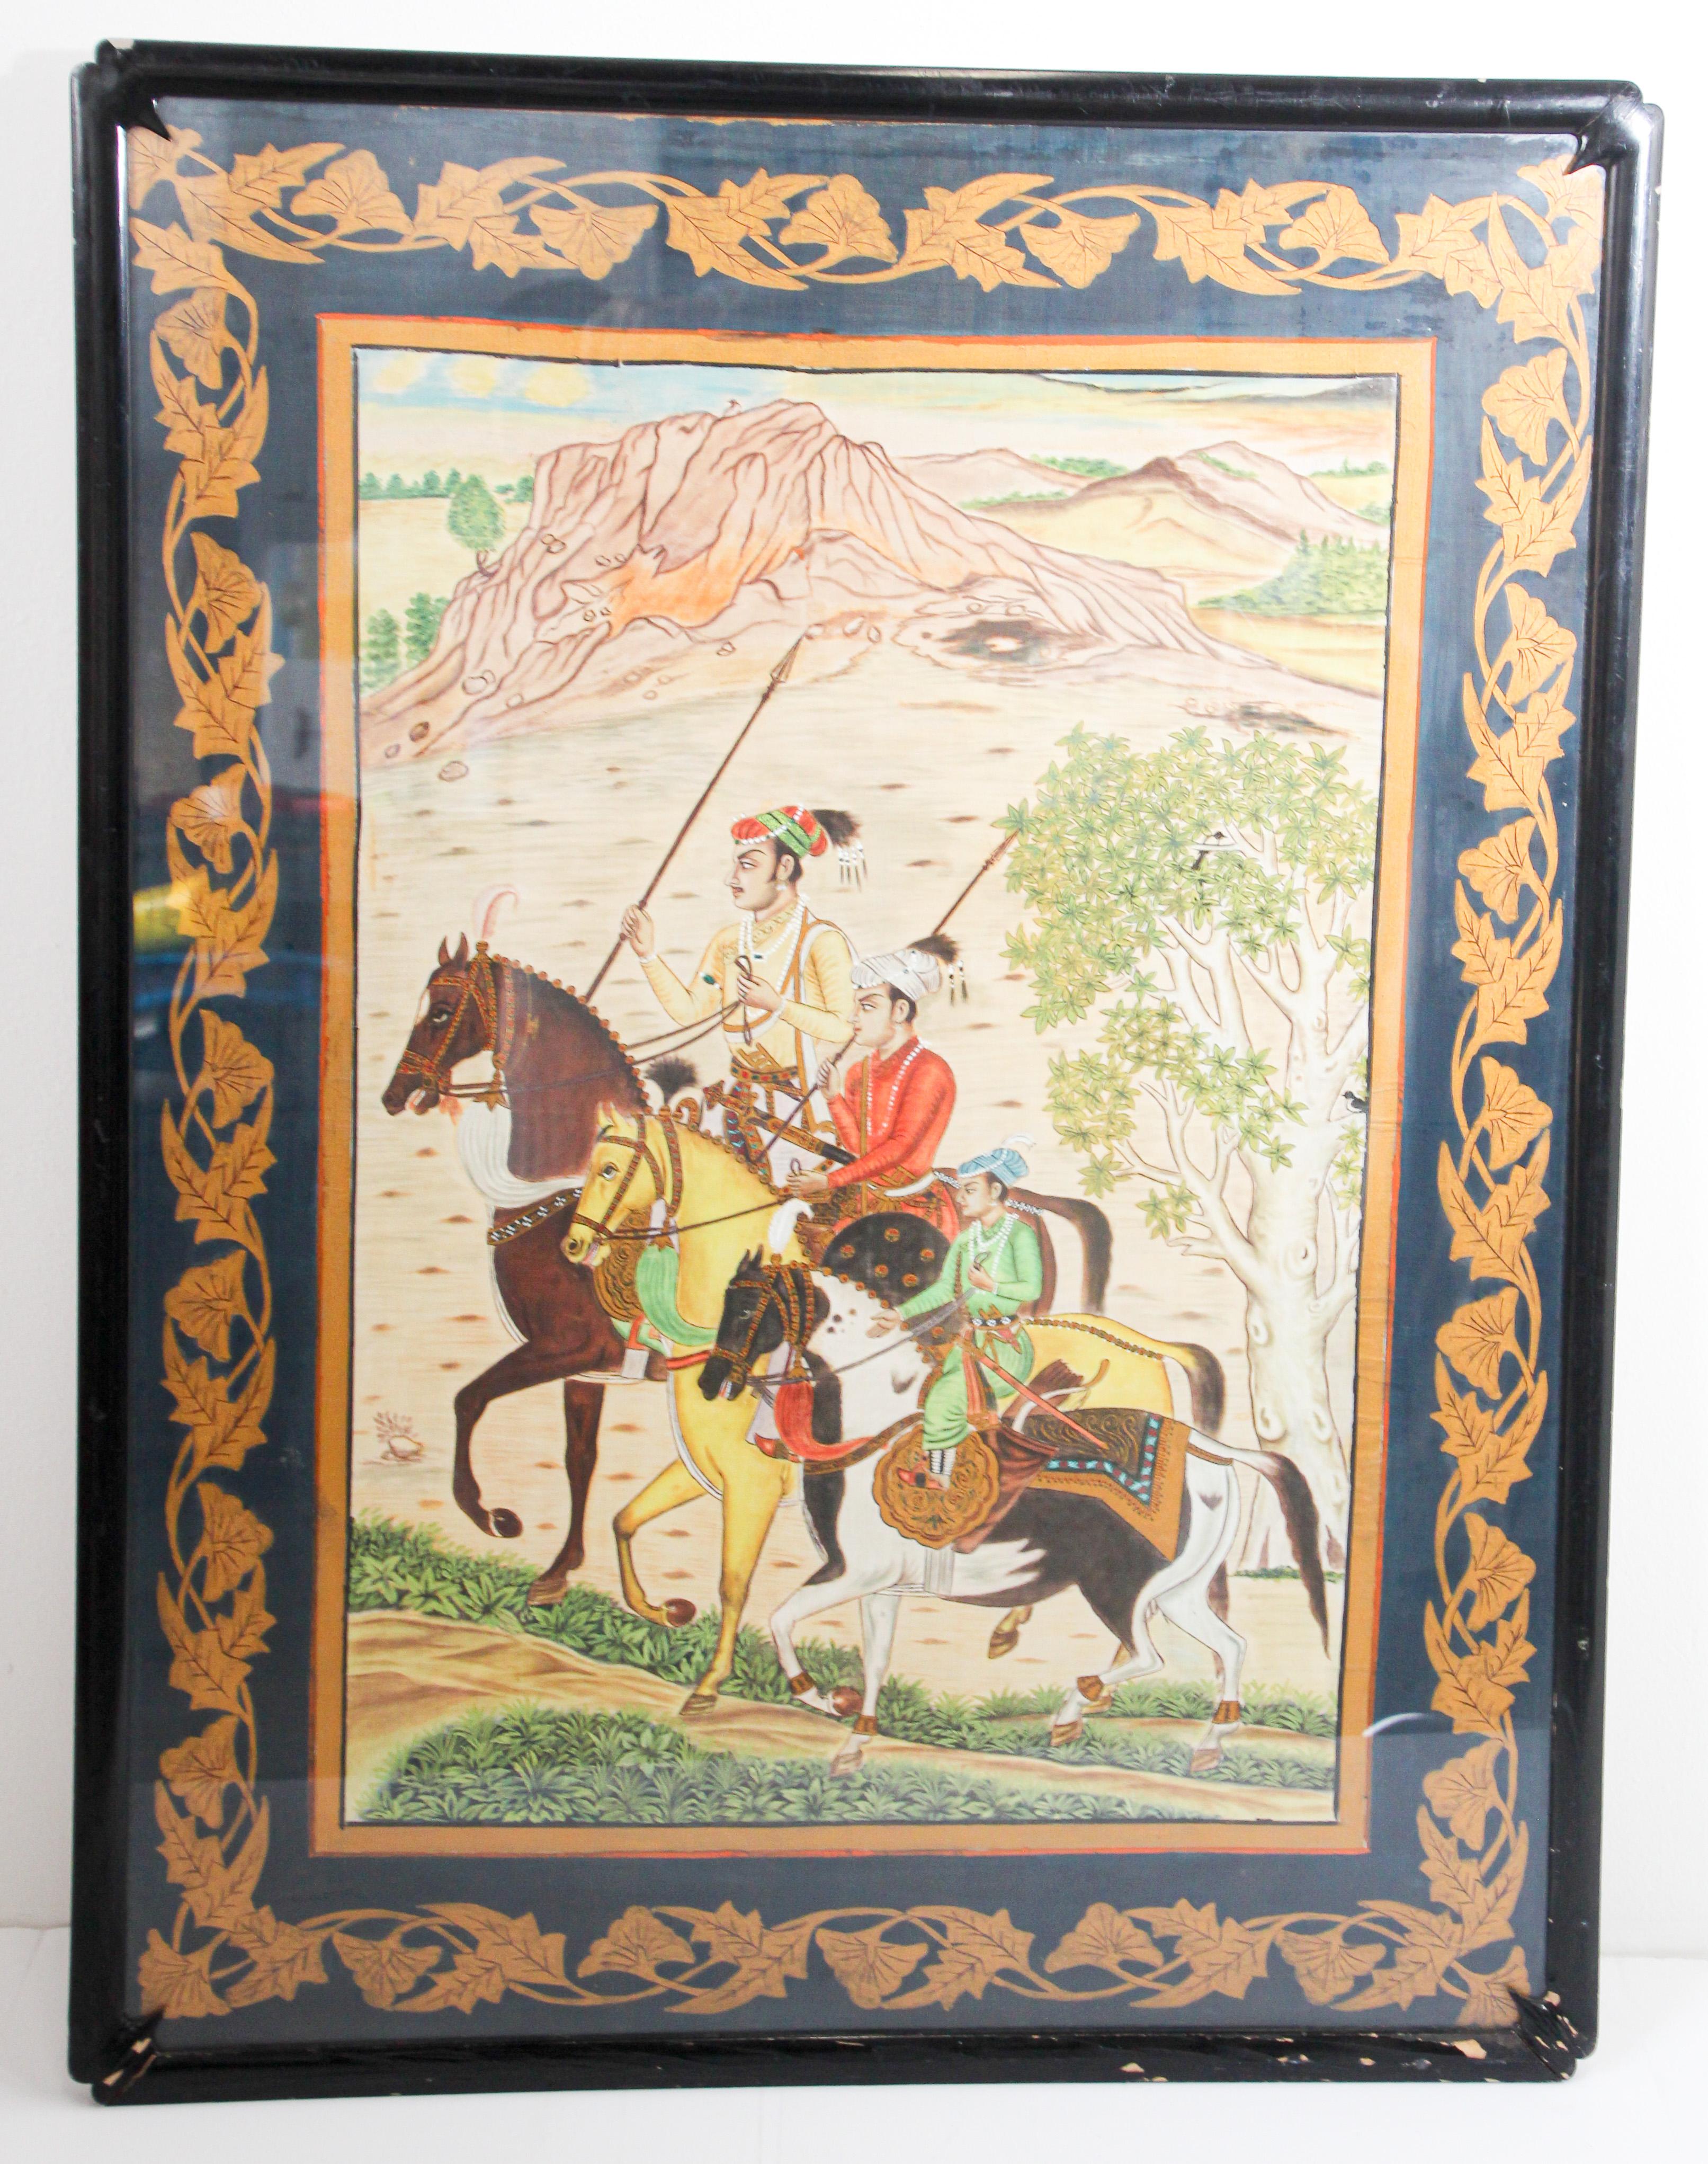 Peinture indienne de style moghol du 19e siècle scène de Maharajahs avec costumes traditionnels d'époque chassant à cheval.
Peinture de l'école moghole indienne sur soie Circa 1950.
Scène des trois fils de l'empereur Shah Jahan : les fils du